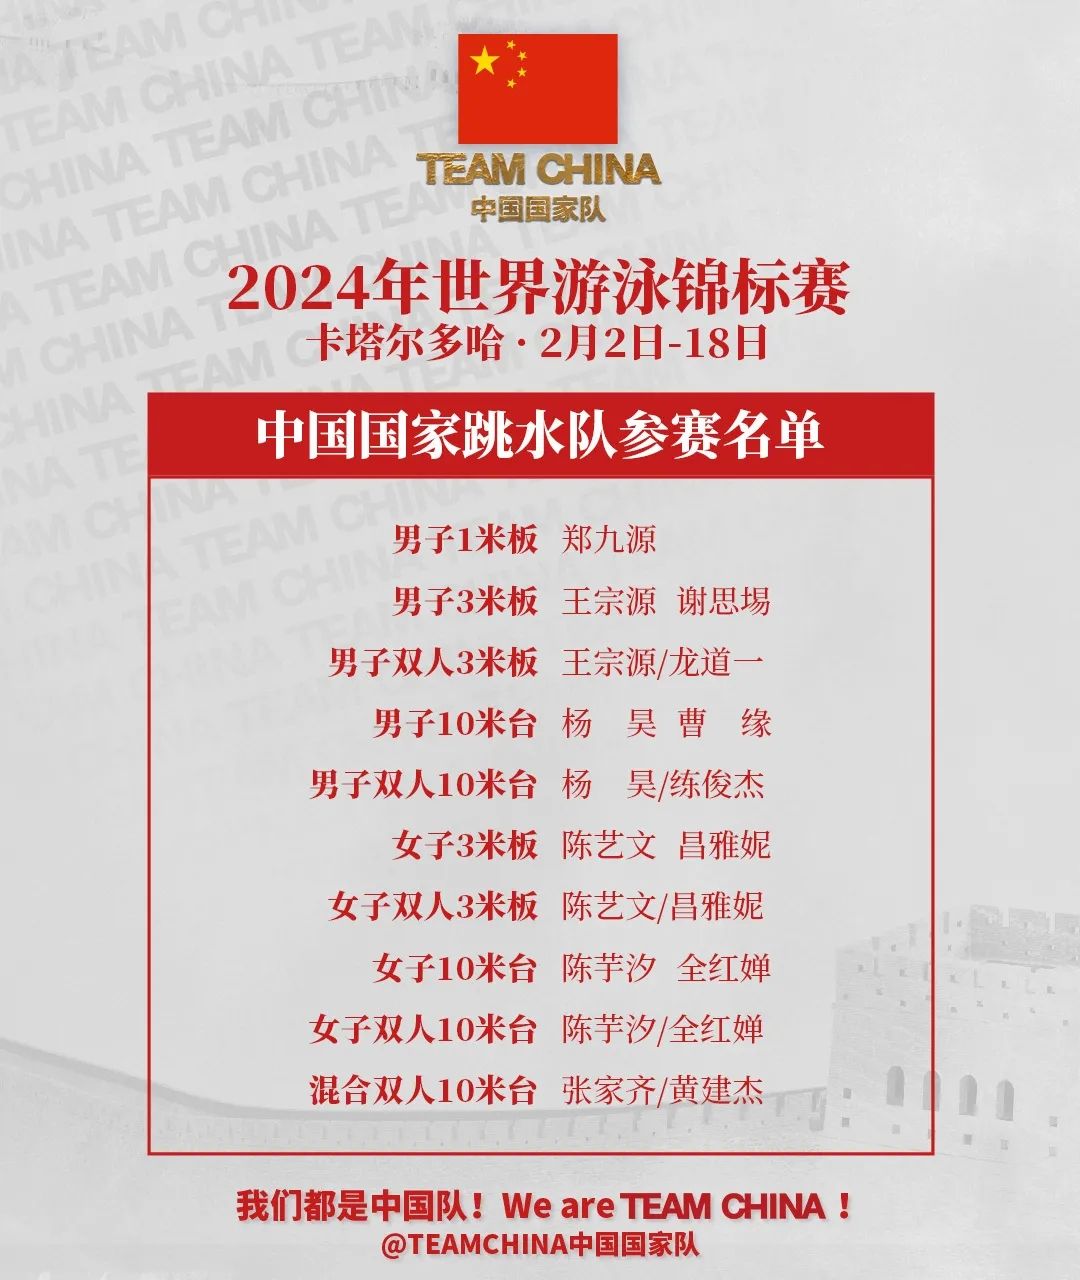 中国女子游泳队名单图片